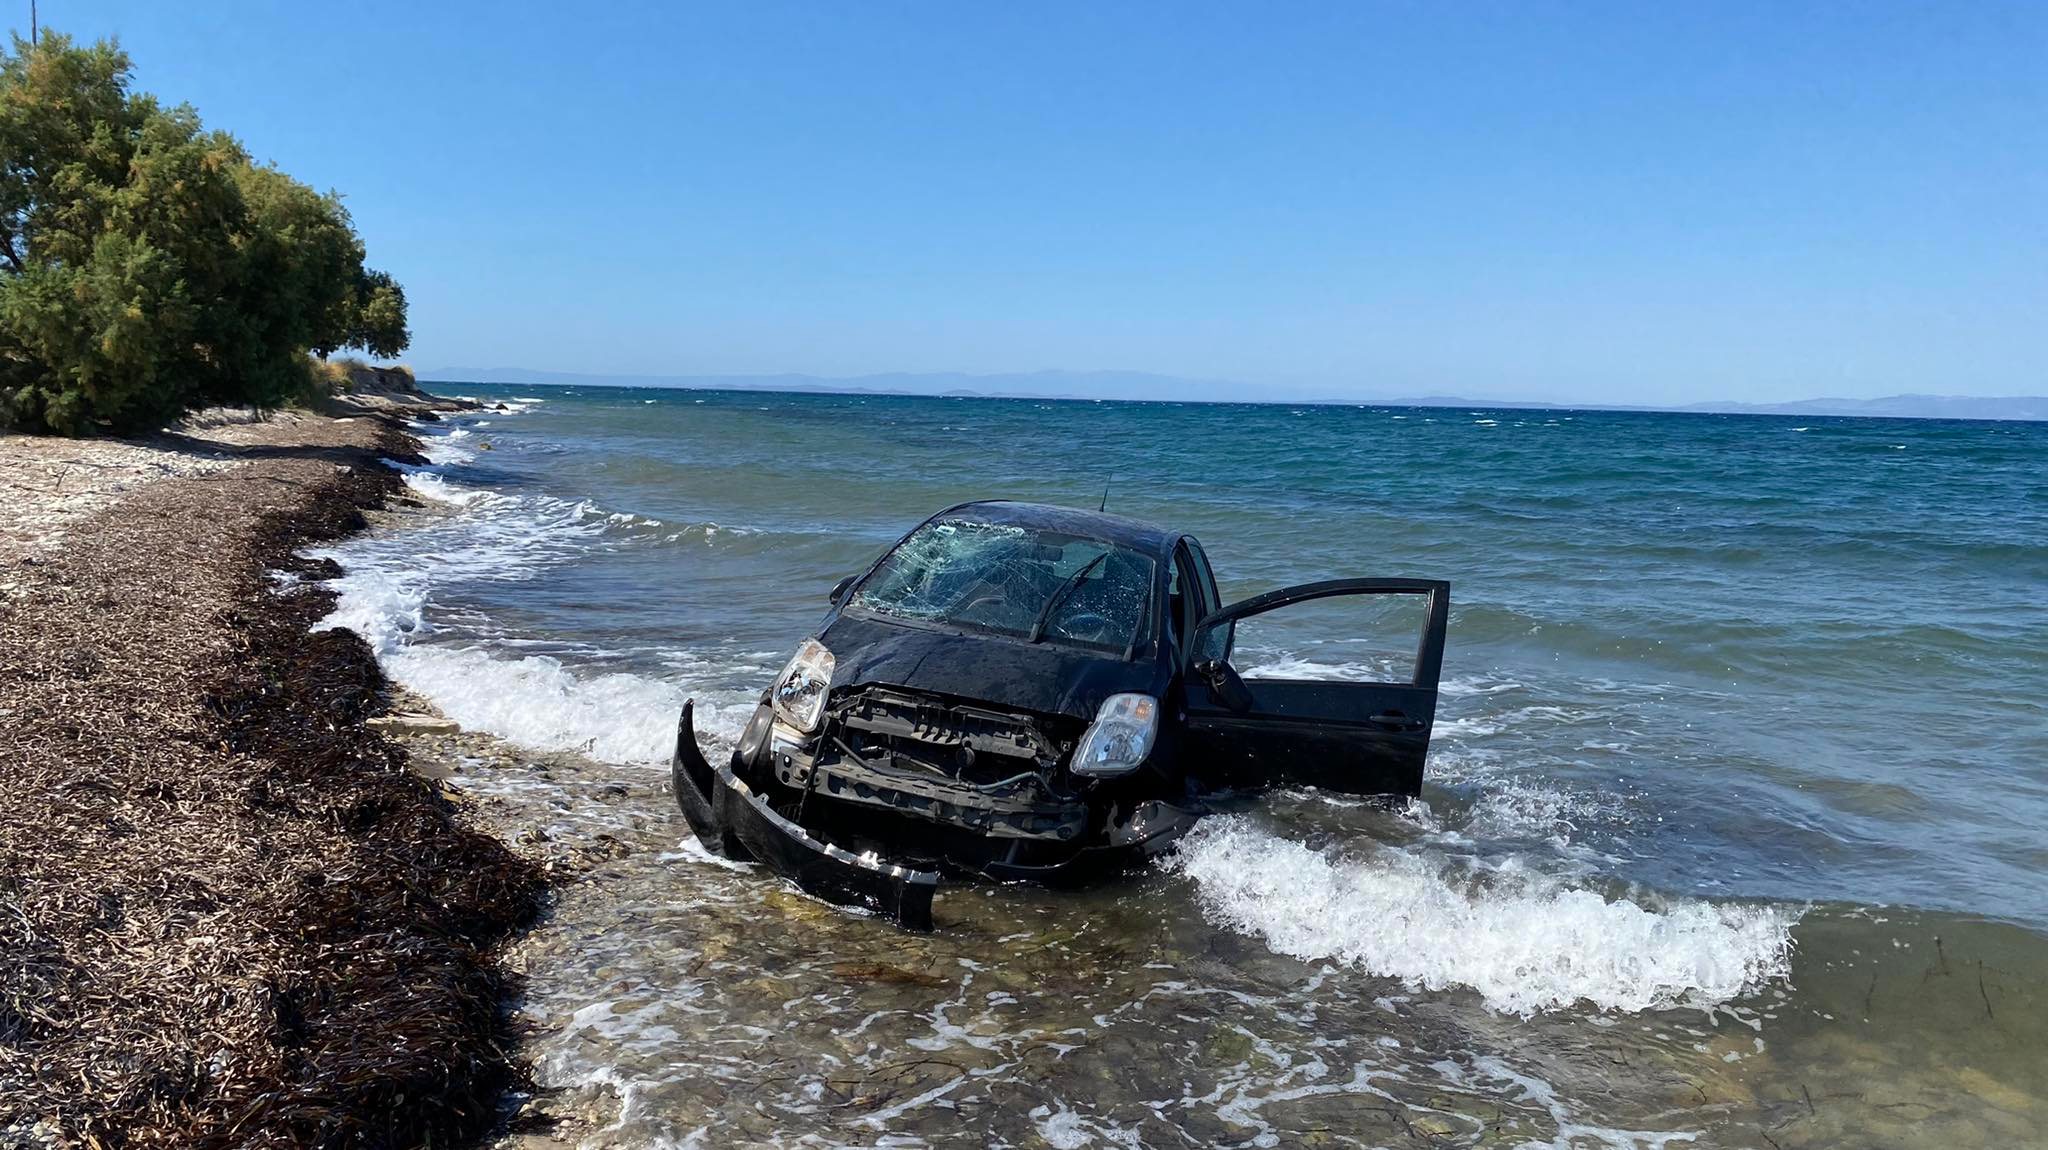 Αυτοκίνητο έπεσε στη θάλασσα | Στο Νοσοκομείο με ελαφρά τραύματα ο οδηγός